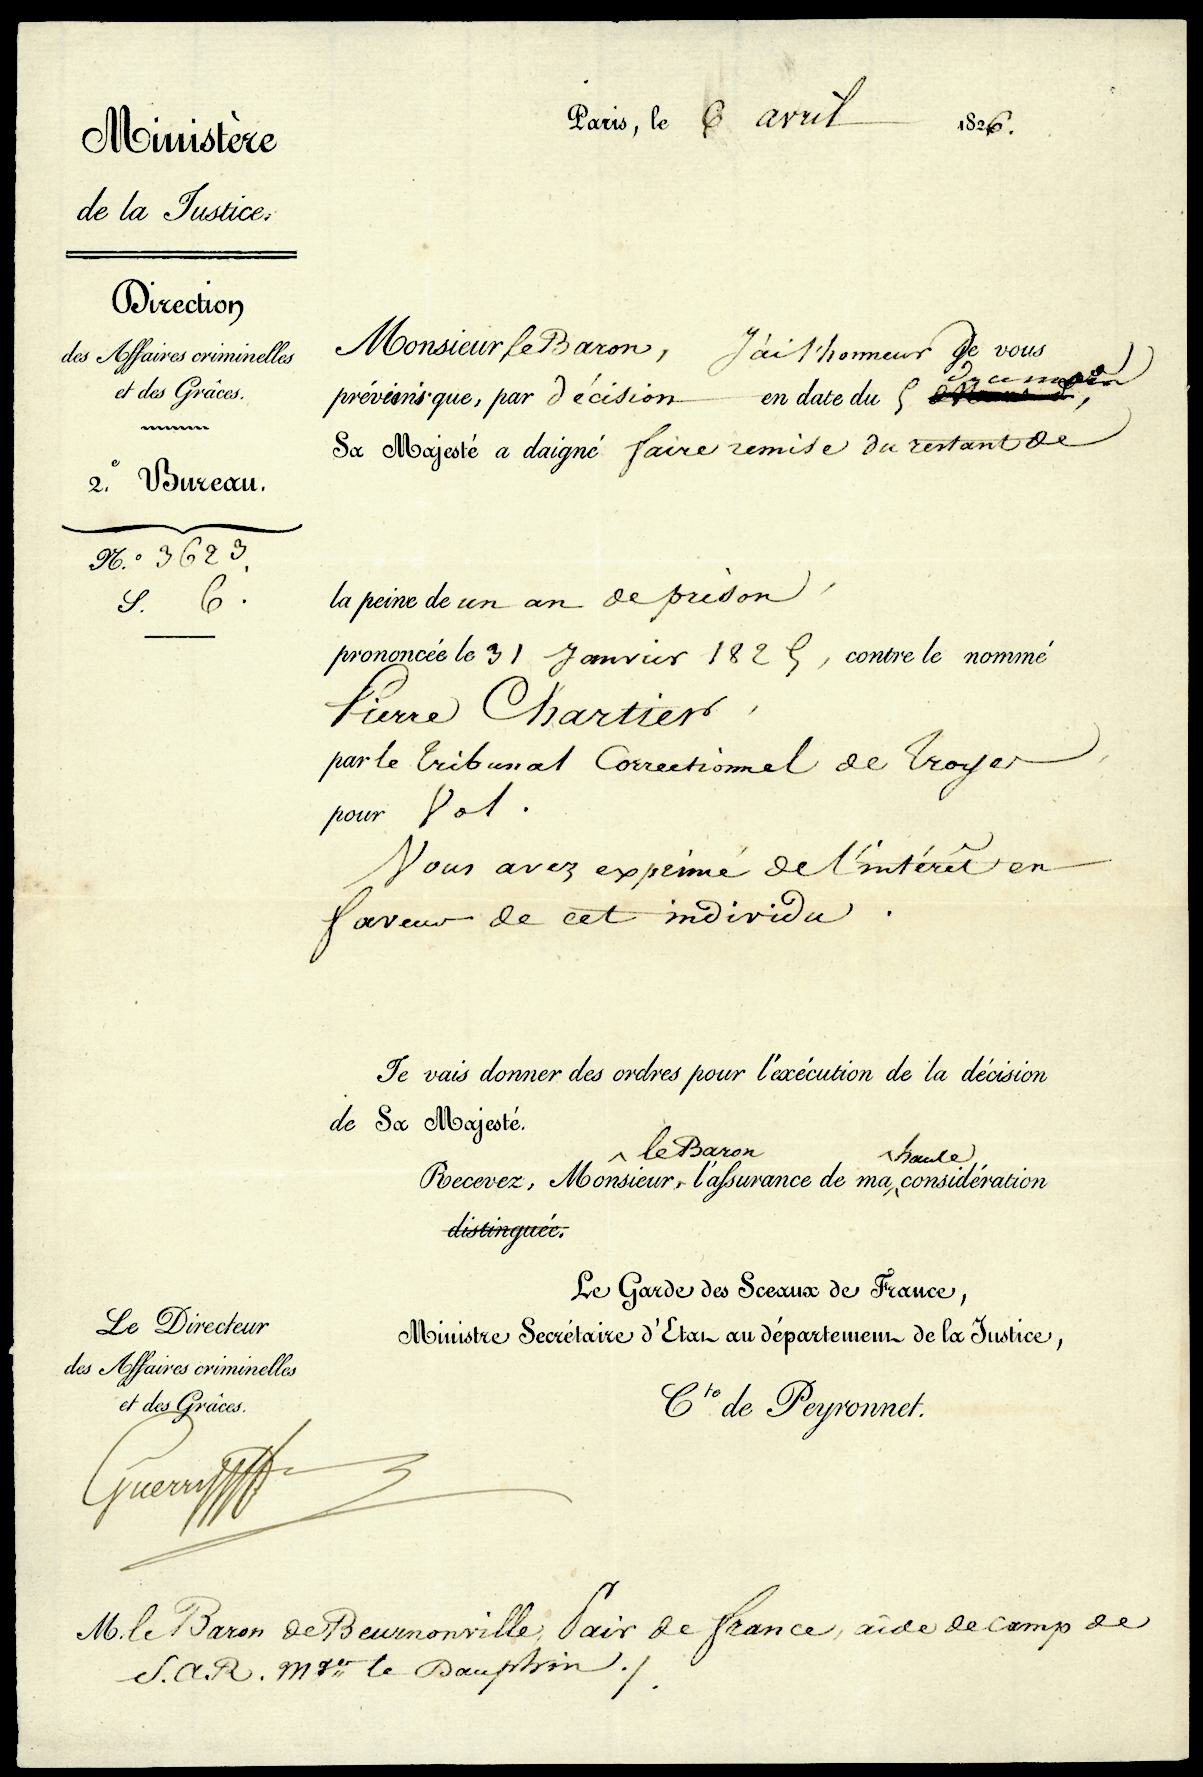 Referenz: peyronnet-pierre-denis-de-ministre-de-la-justice-1821-28-futur-ministre-de-l-interieur